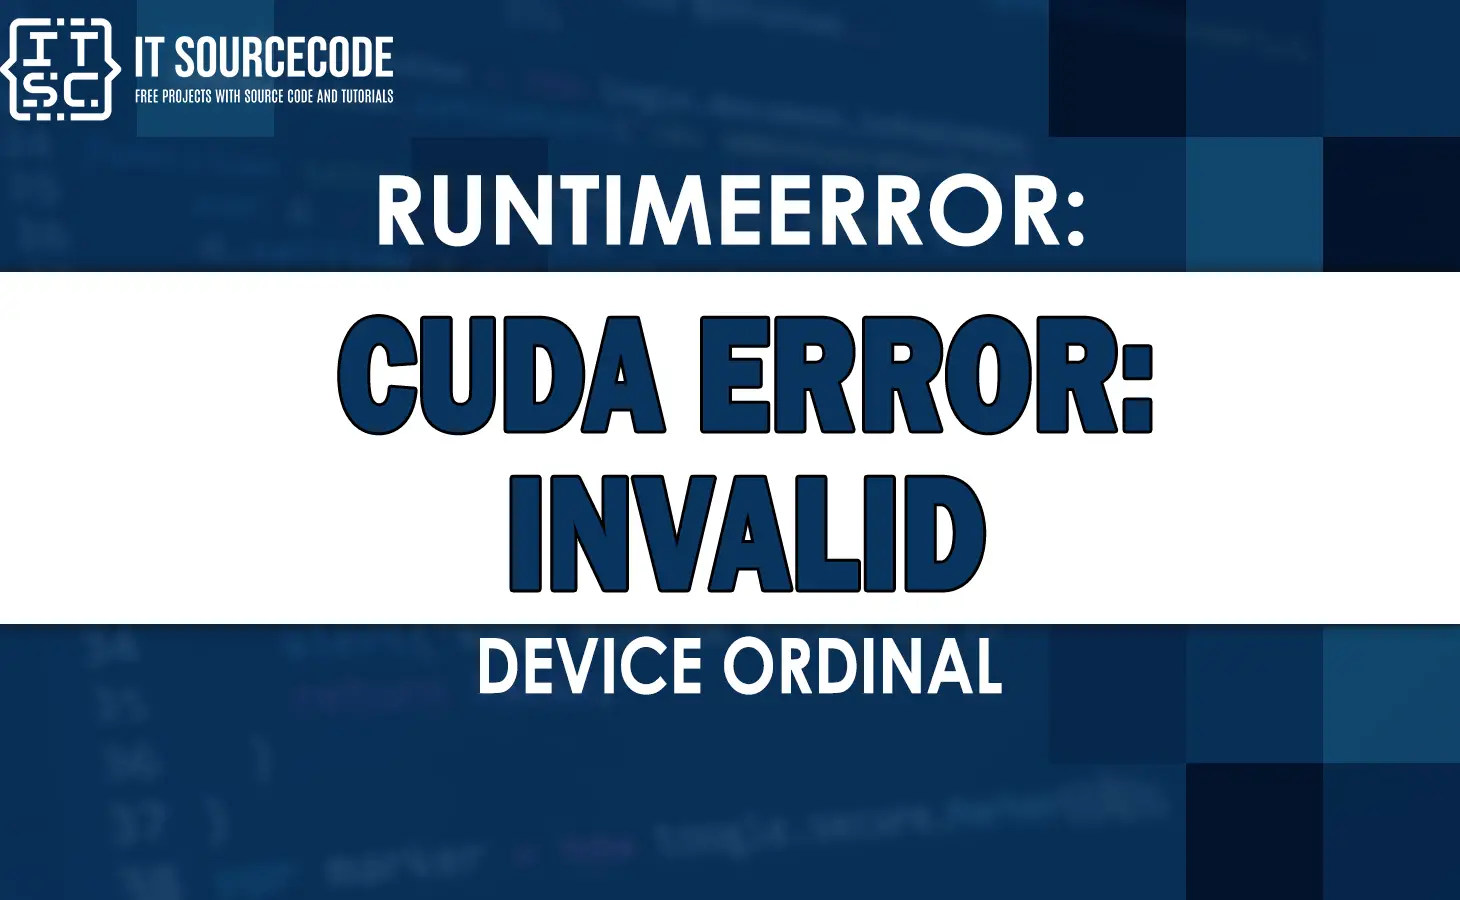 runtimeerror cuda error invalid device ordinal